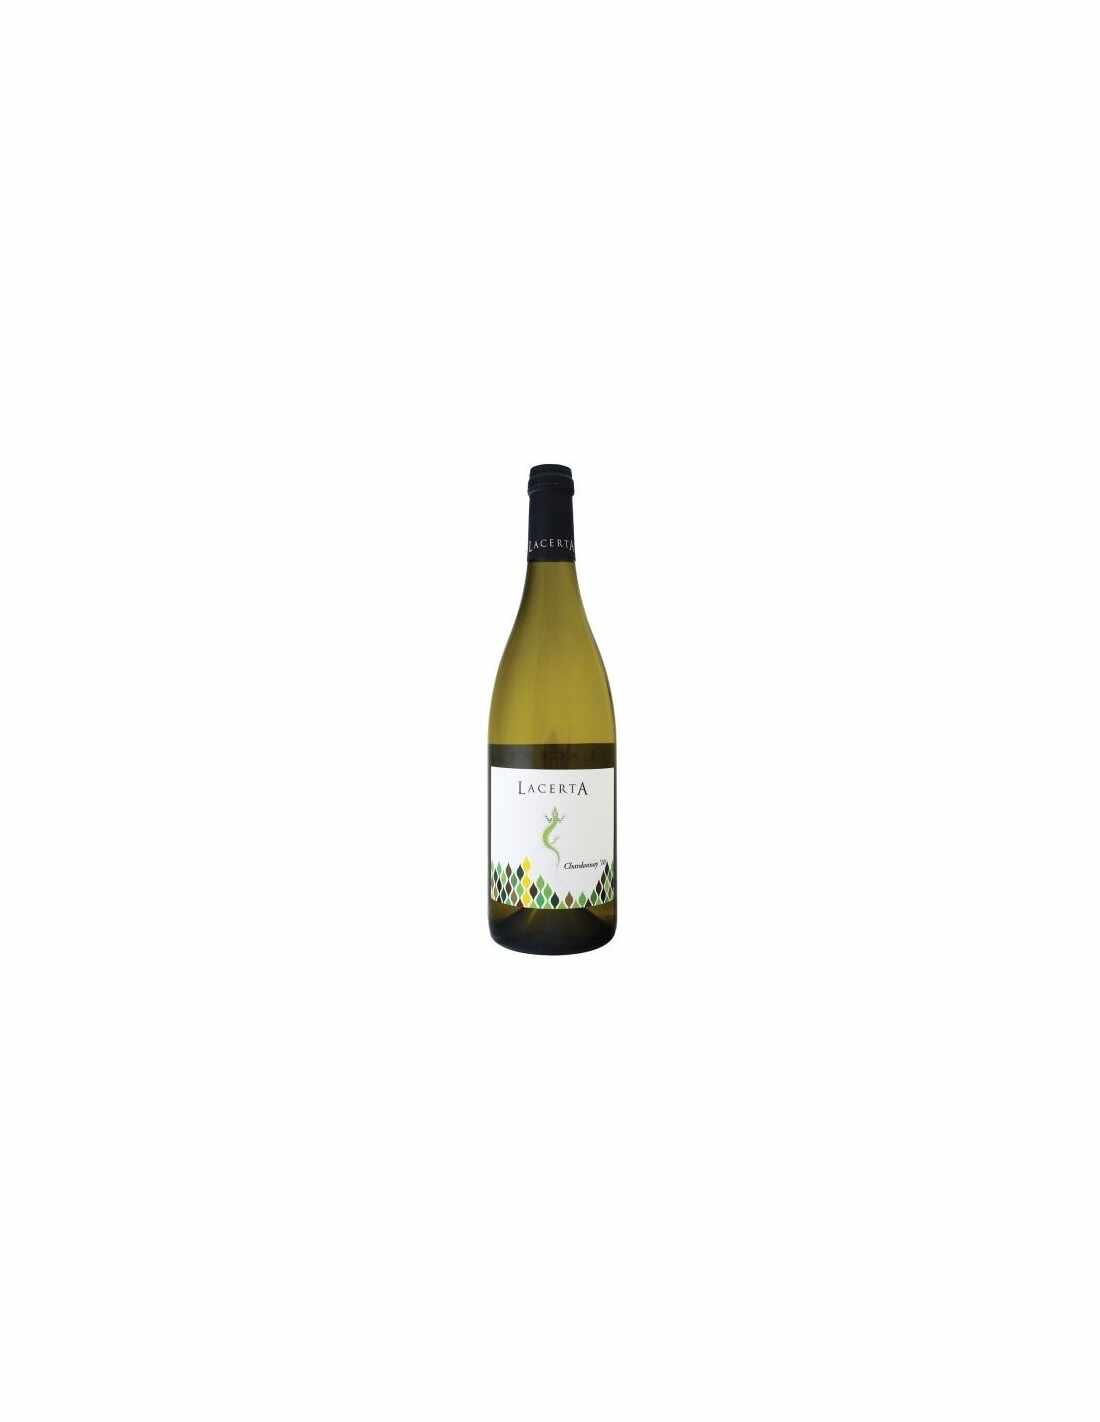 Vin alb sec, Chardonnay, Lacerta Dealu Mare, 2018, 0.75L, 13.8% alc., Romania